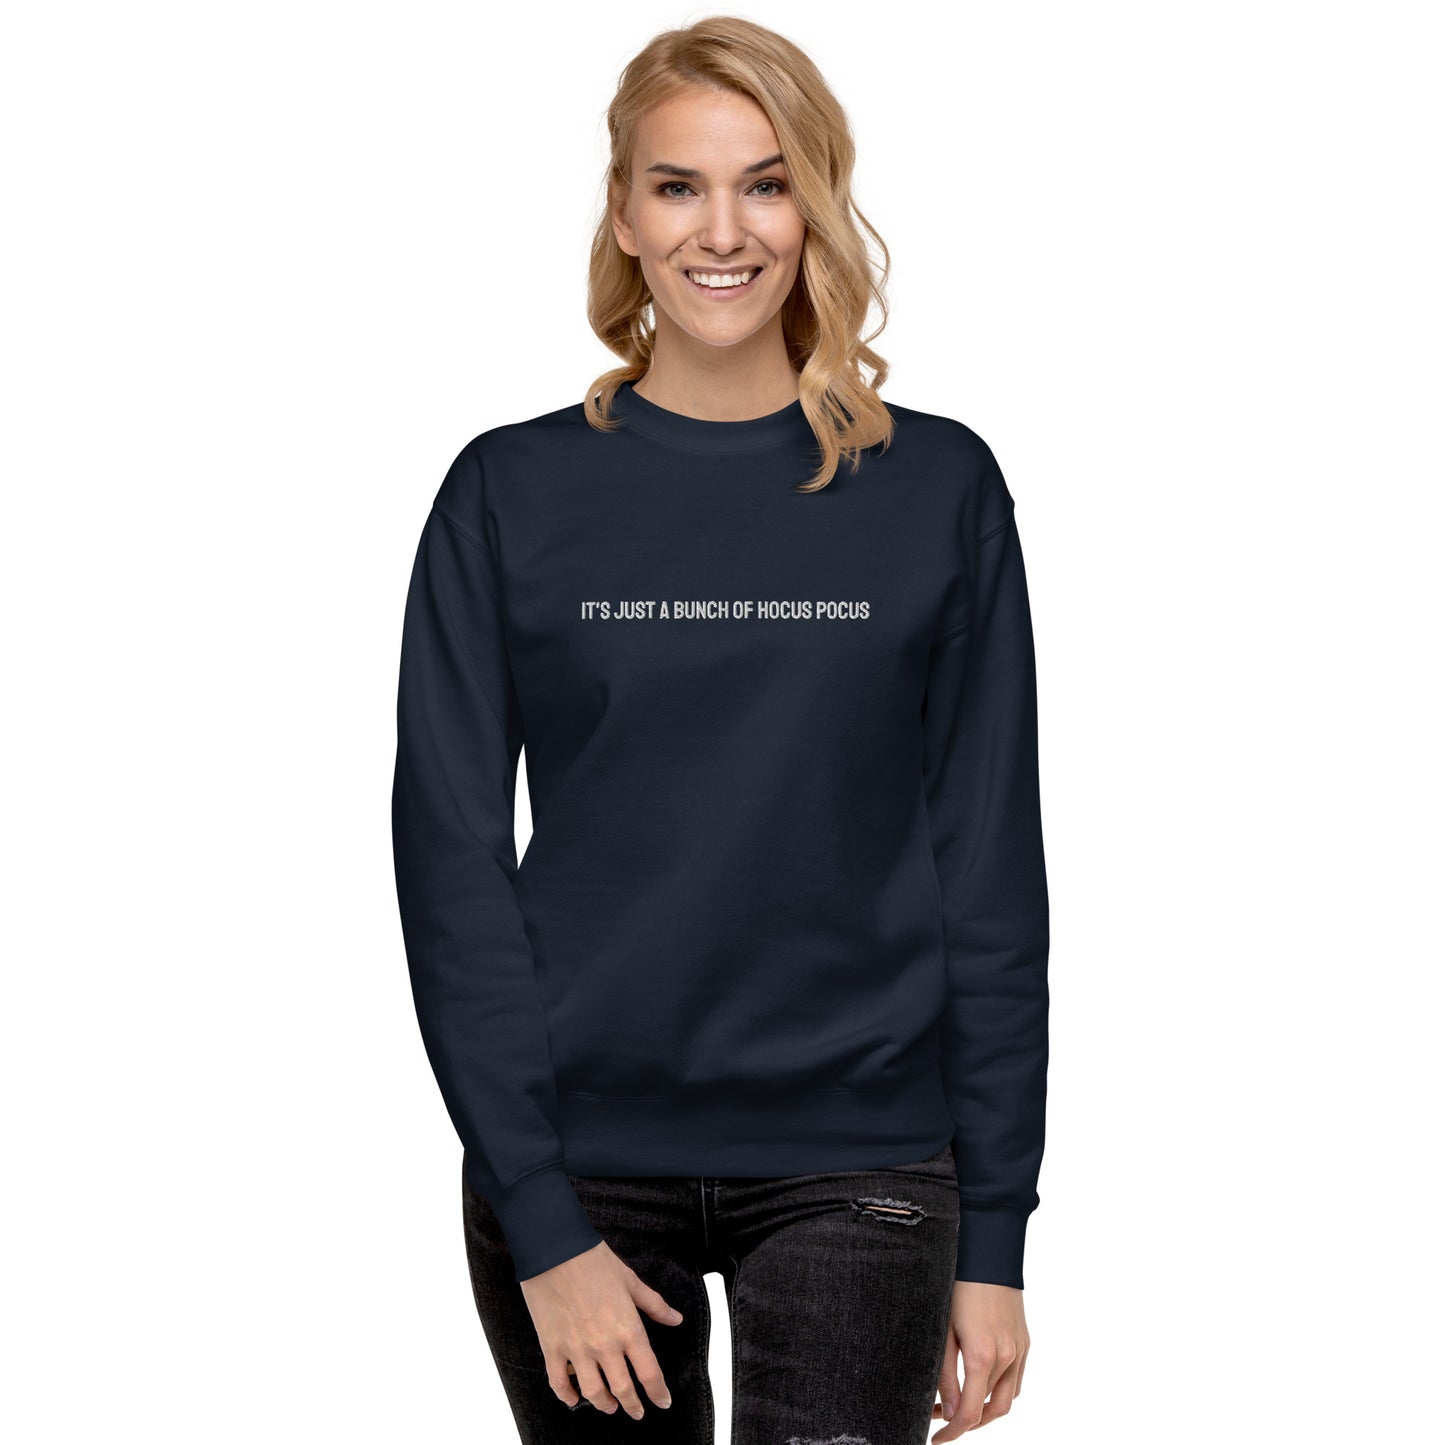 Hocus Pocus Simple Unisex Premium Sweatshirt